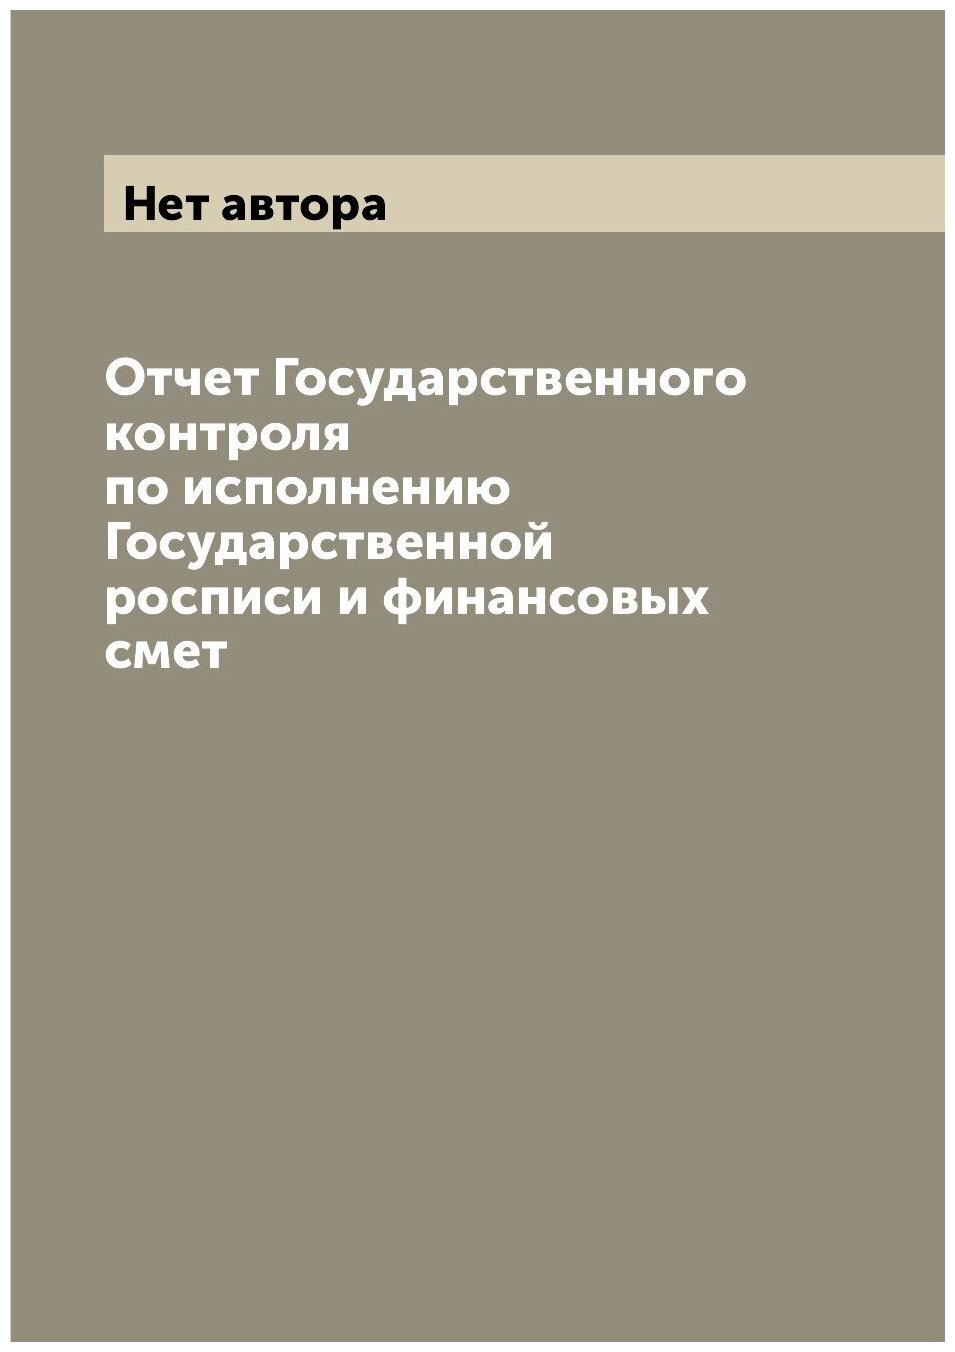 Отчет Государственного контроля по исполнению Государственной росписи и финансовых смет